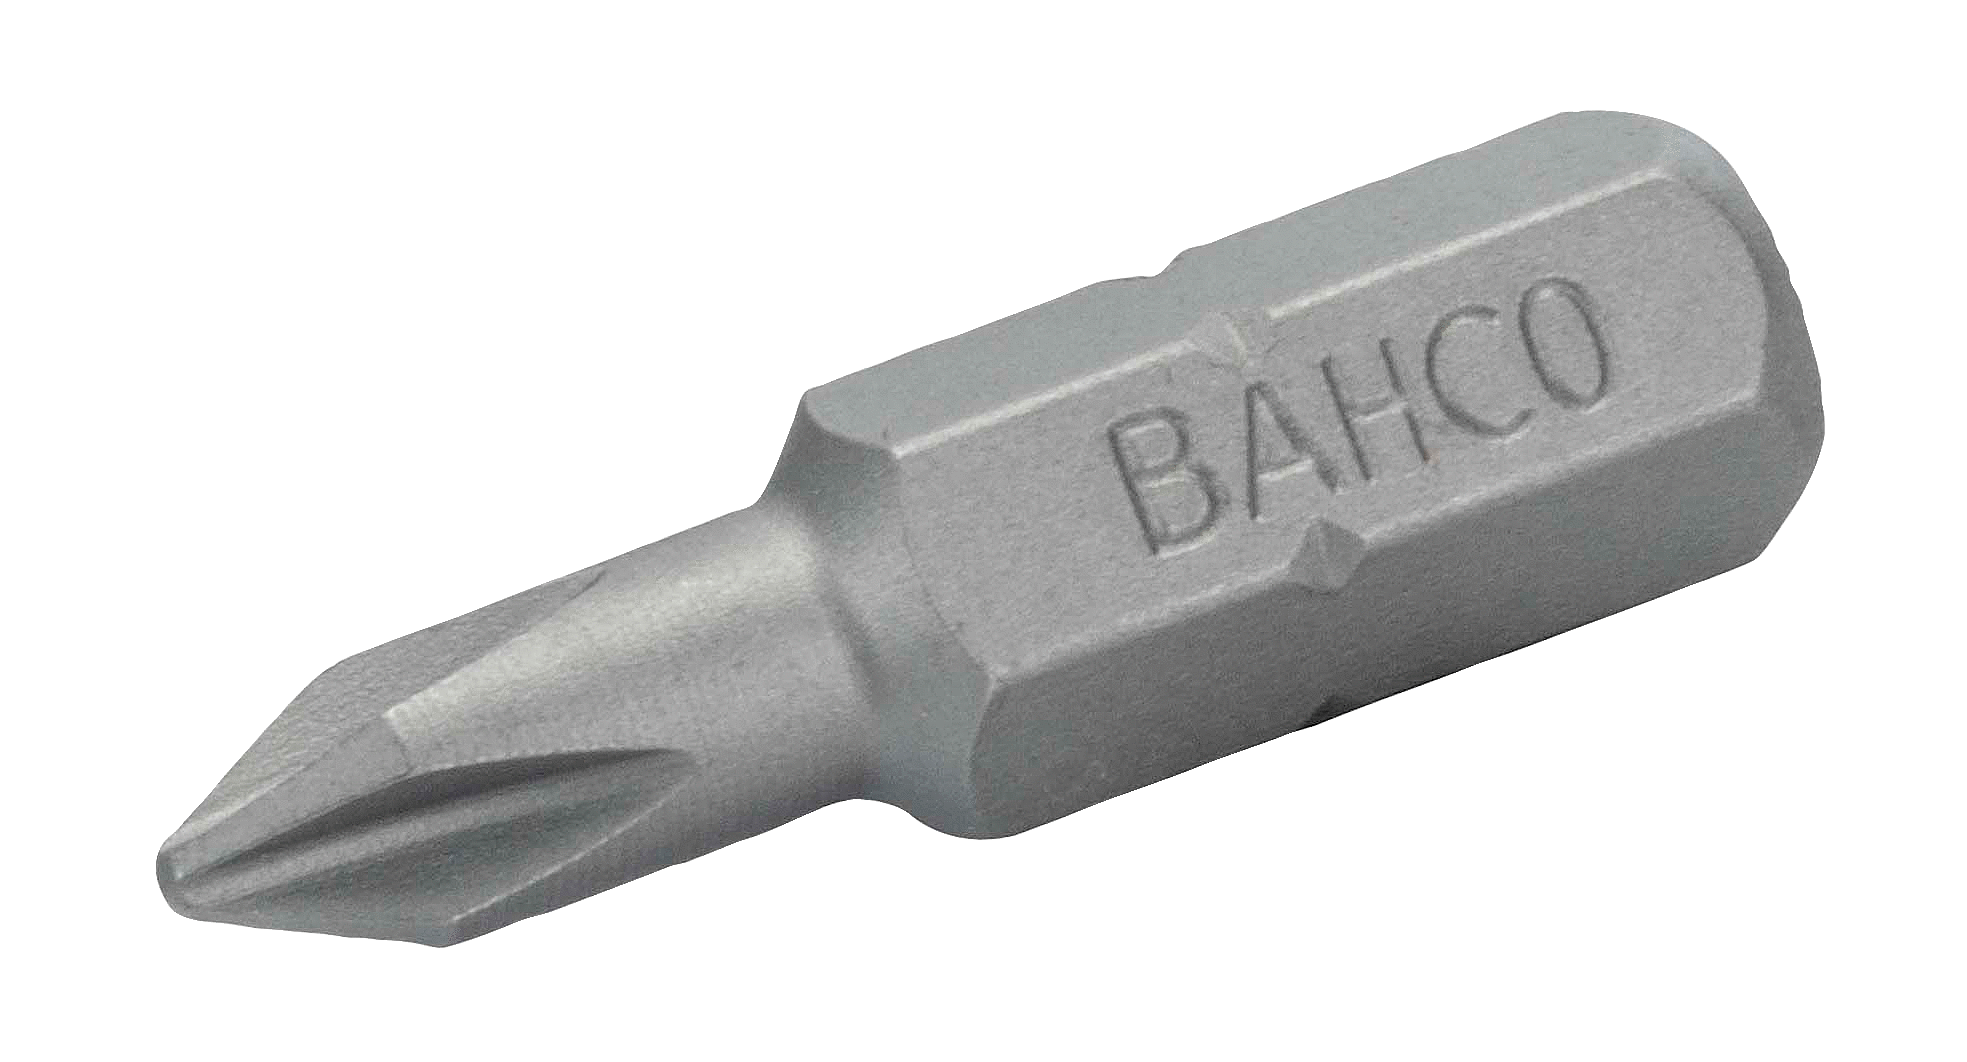 картинка Стандартные биты для отверток Phillips, 25 мм BAHCO 59S/PH0 от магазина "Элит-инструмент"